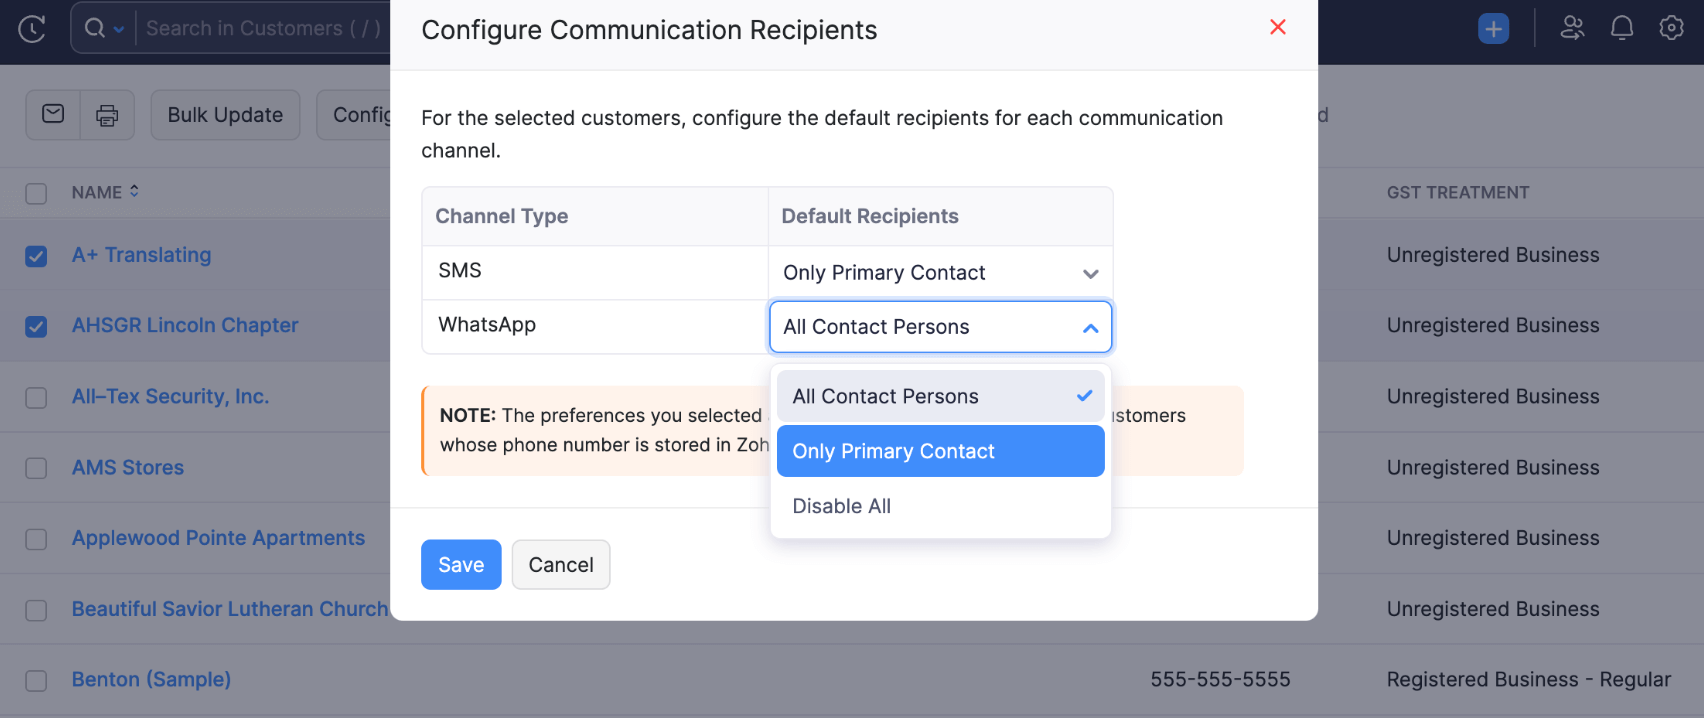 Configure Communication Recepient